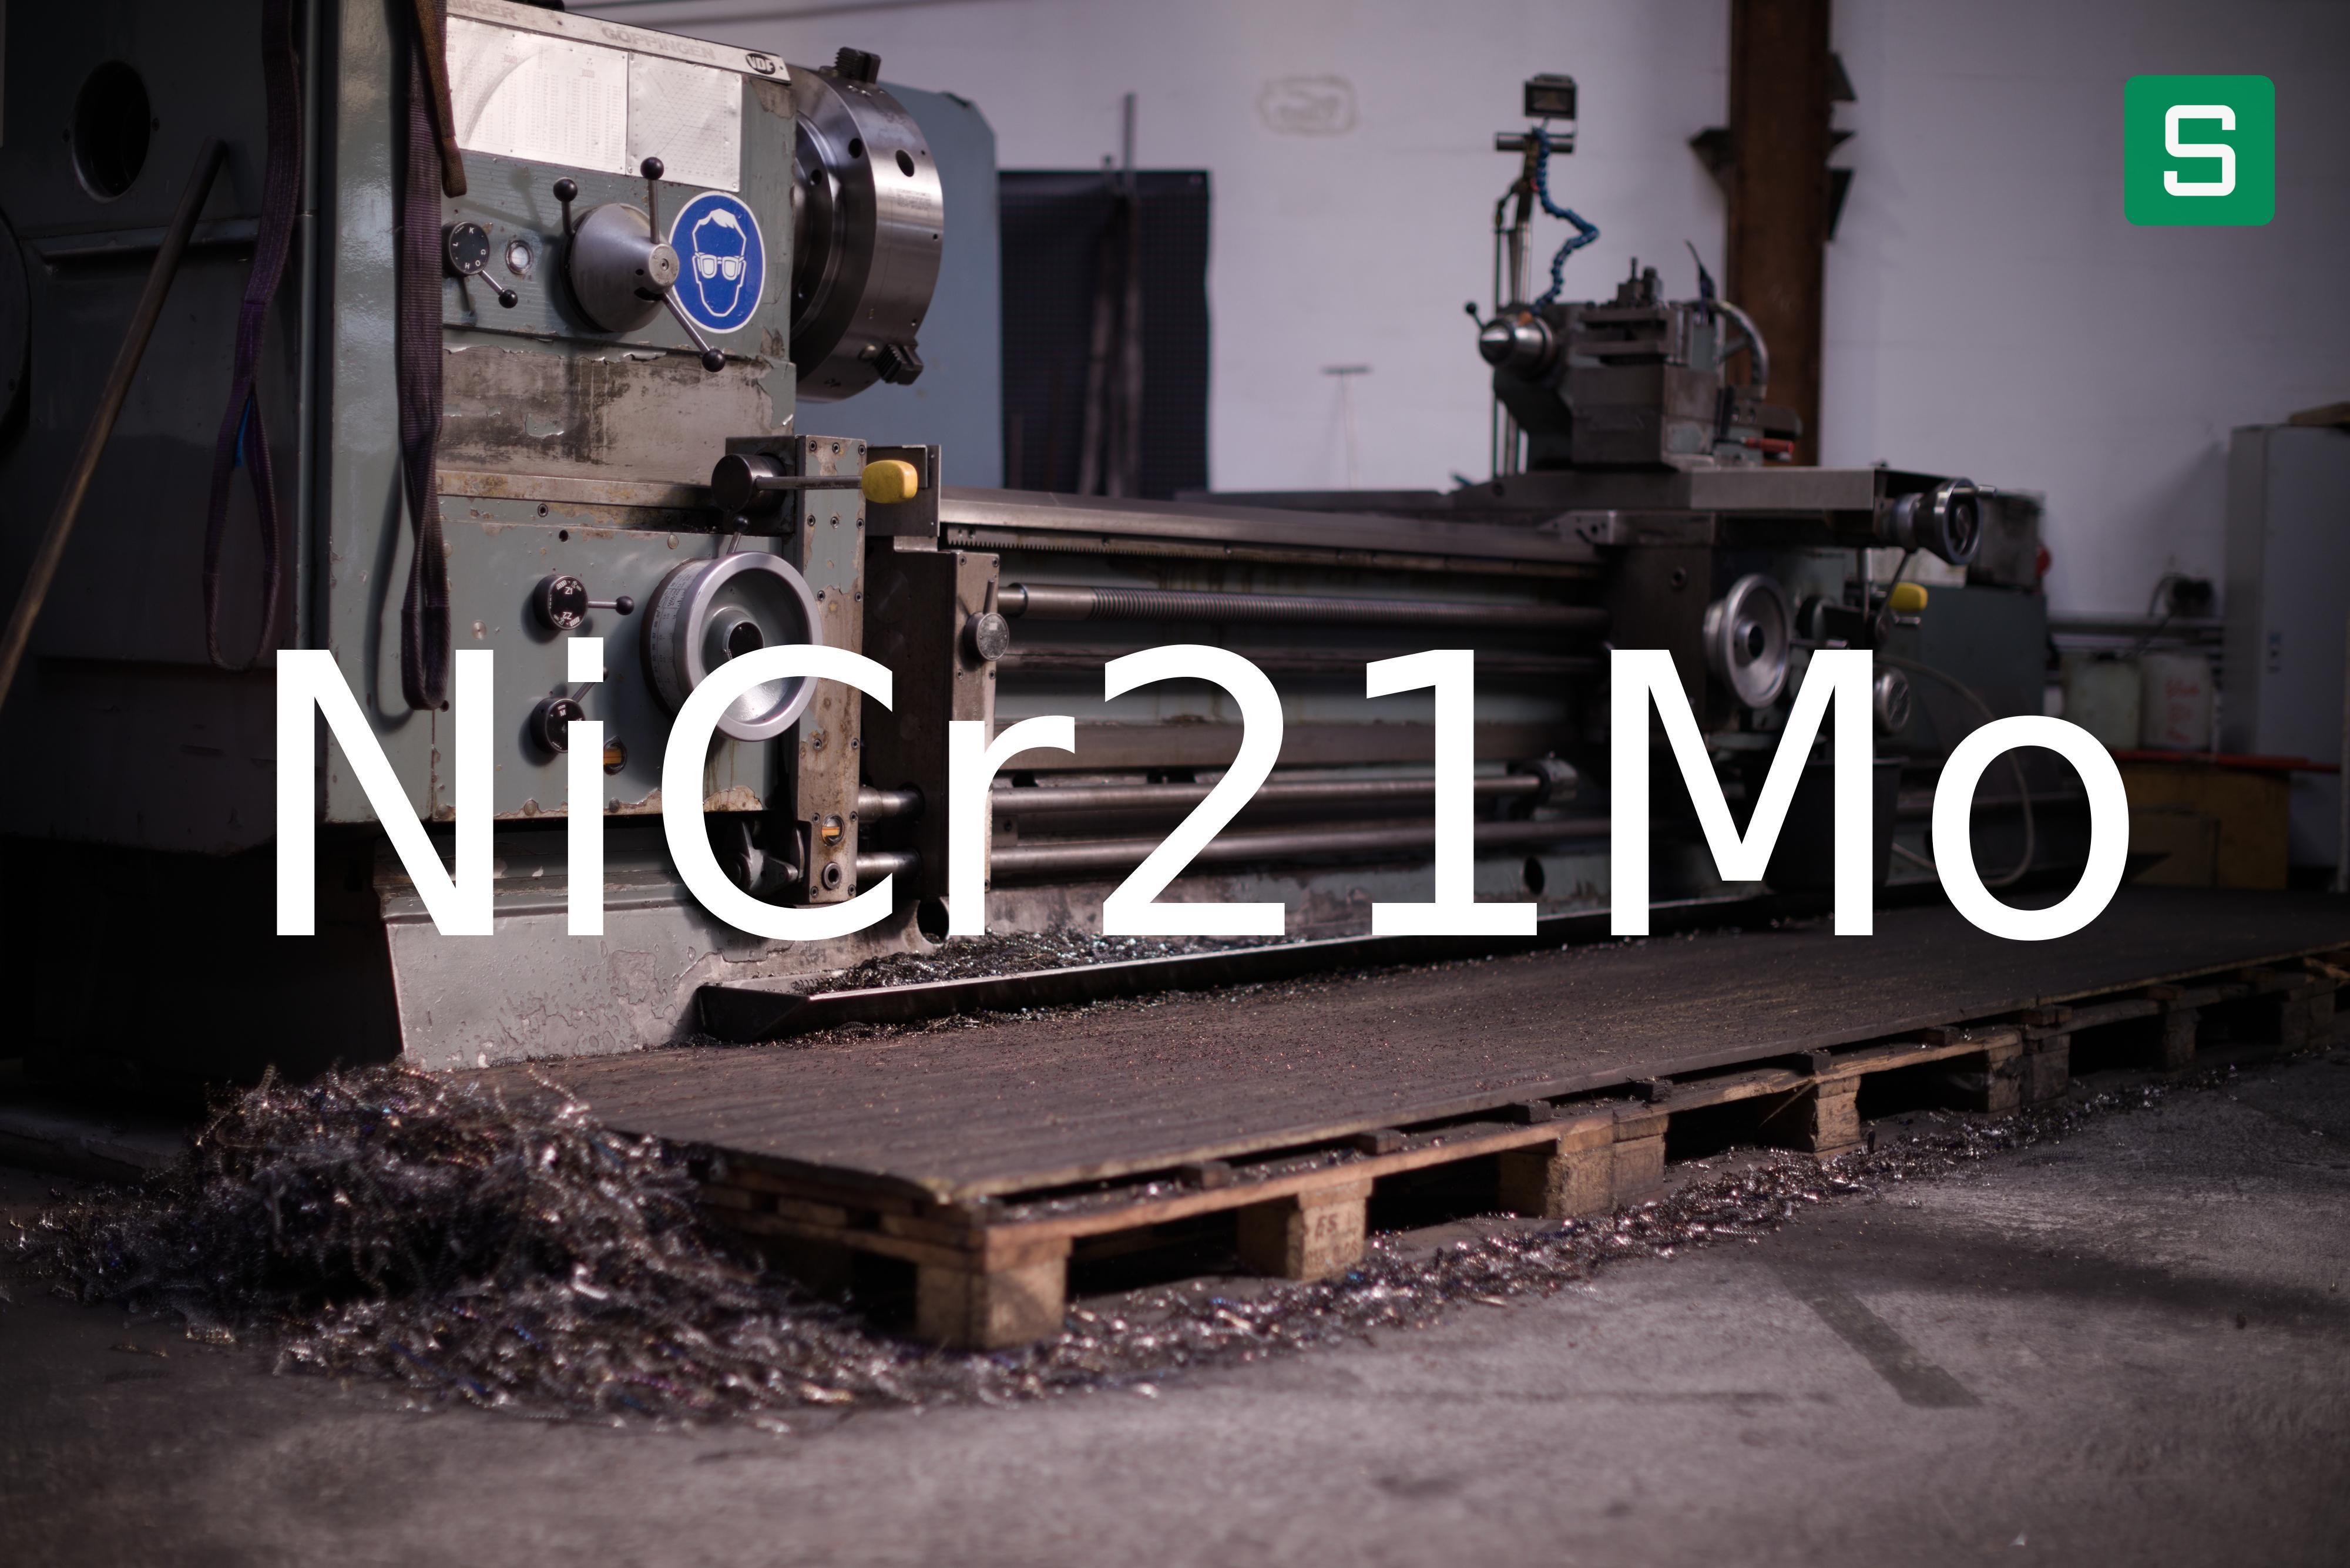 Steel Material: NiCr21Mo